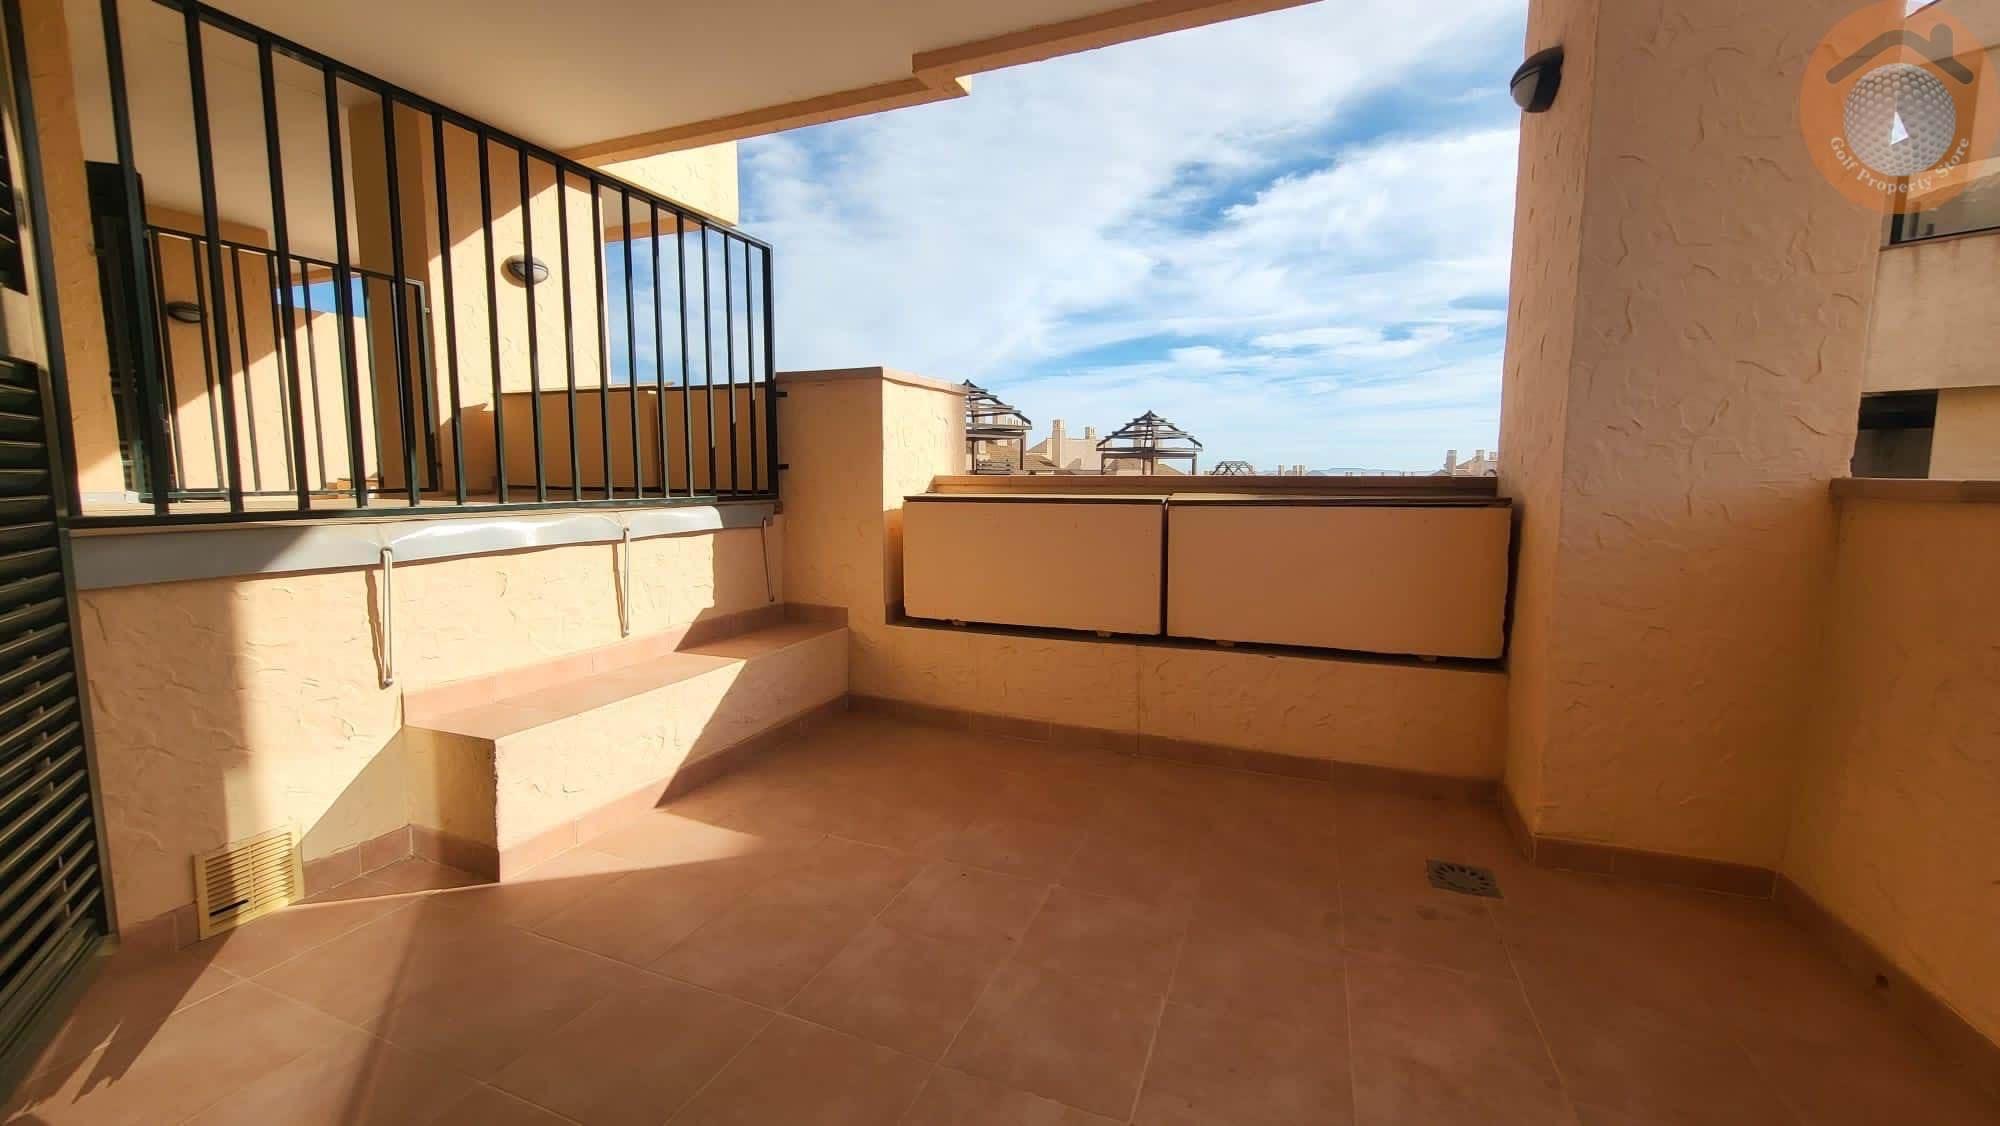 HACIENDA DEL ALAMO 2 BED 2 BATH APARTMENT WITH PRIVATE PLUNGE POOL